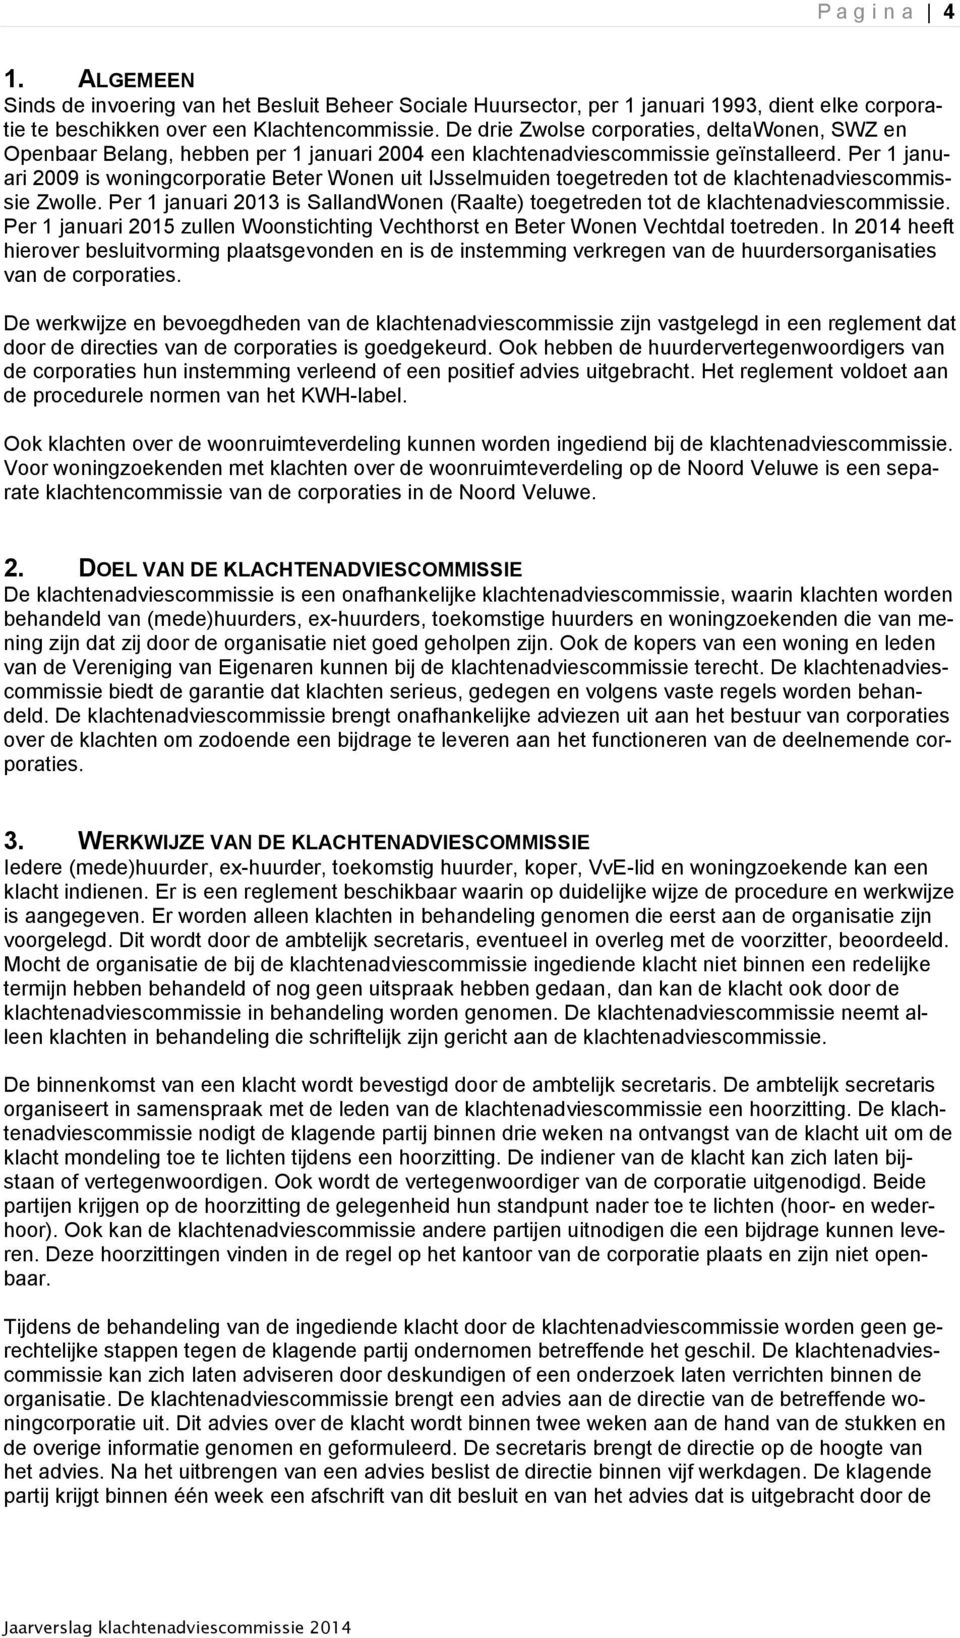 Per 1 januari 2009 is woningcorporatie Beter Wonen uit IJsselmuiden toegetreden tot de klachtenadviescommissie Zwolle.